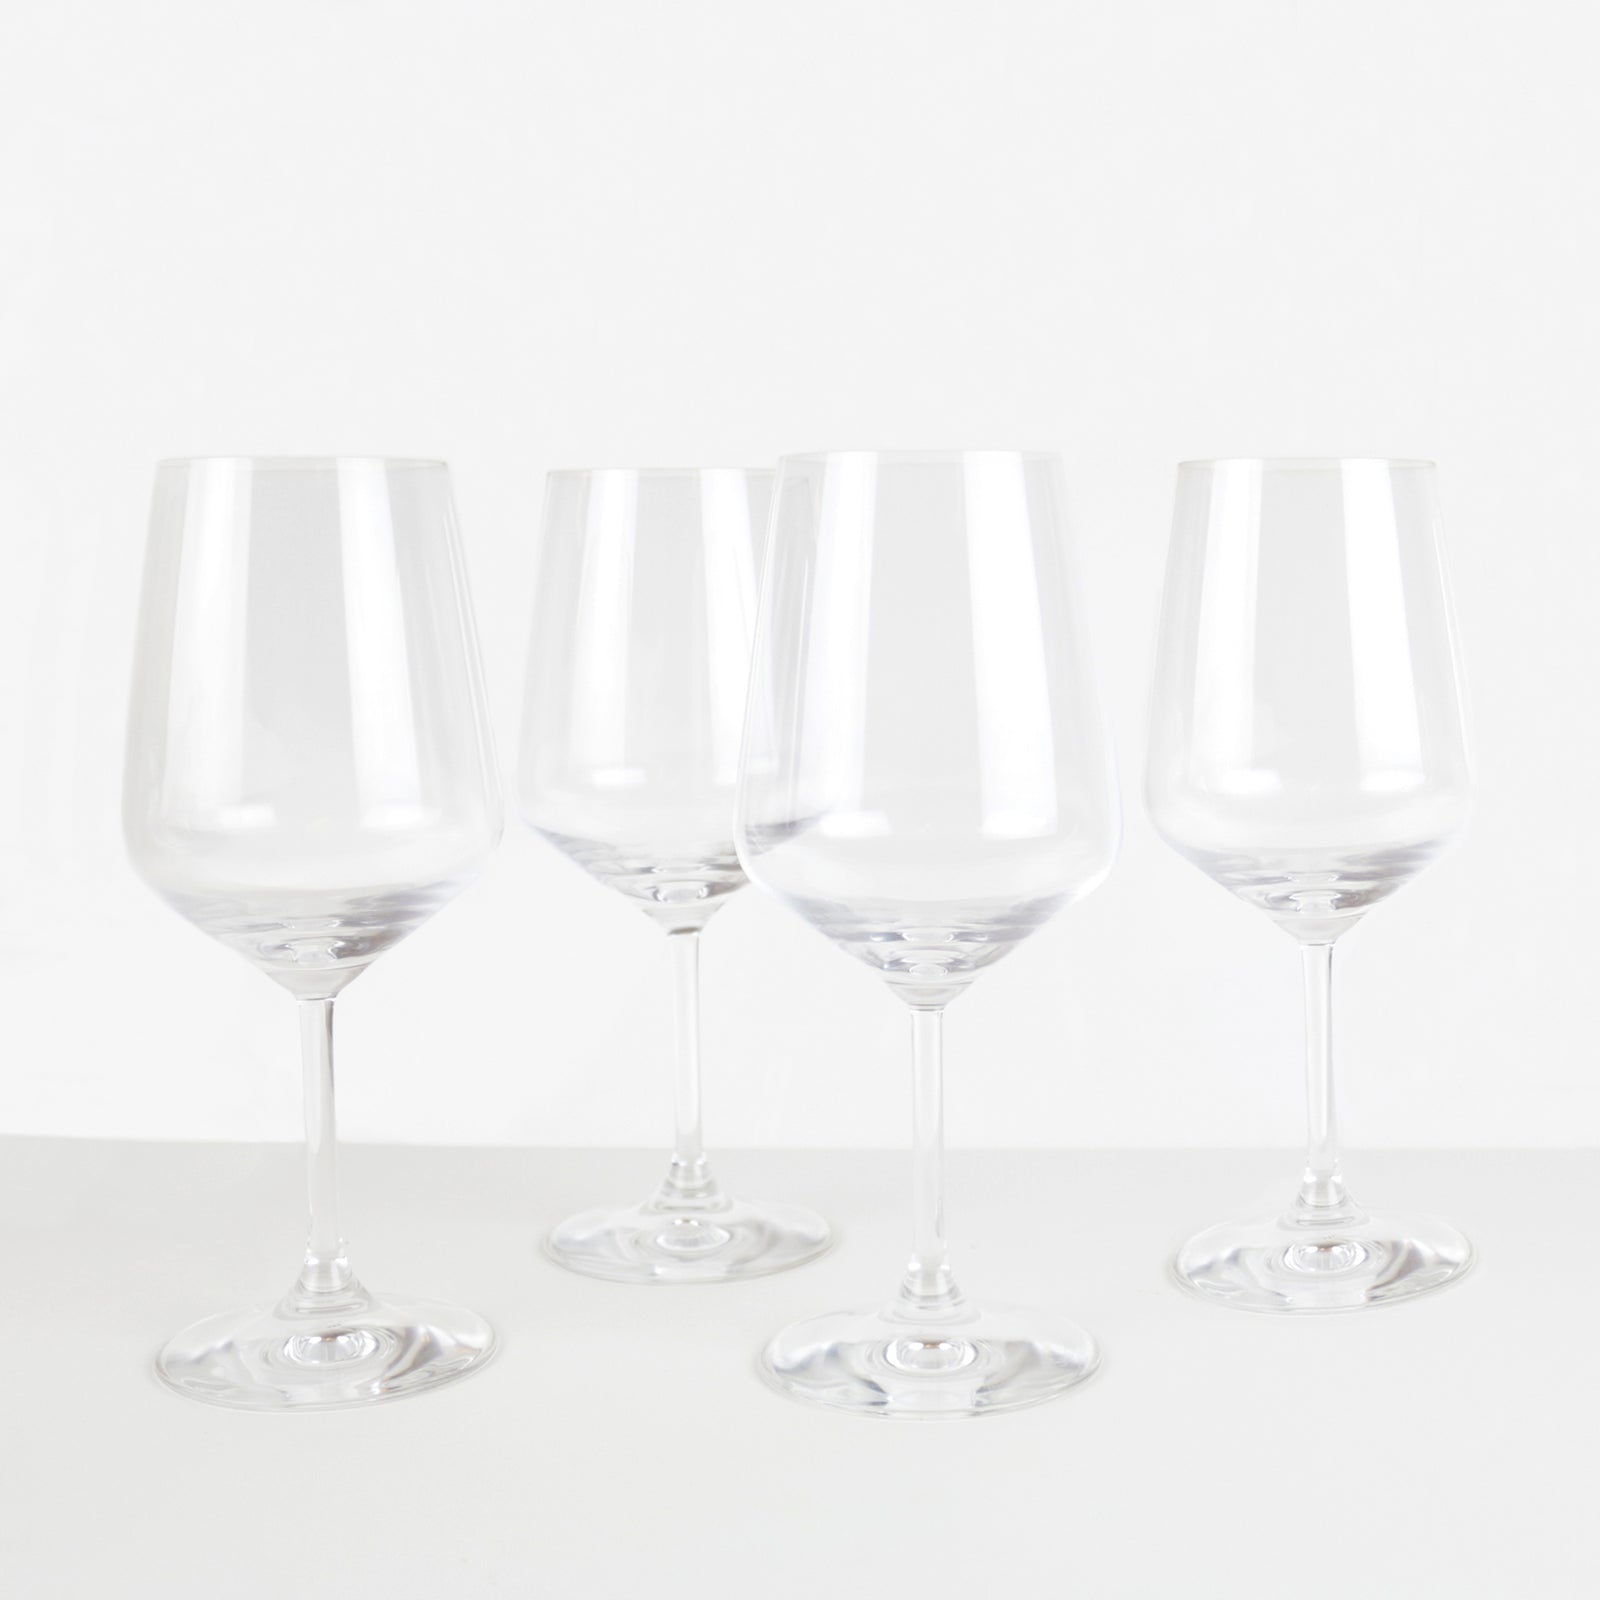 https://store.vinepair.com/cdn/shop/products/Universal-Speiglau-Glasses-1_1600x.jpg?v=1509142332